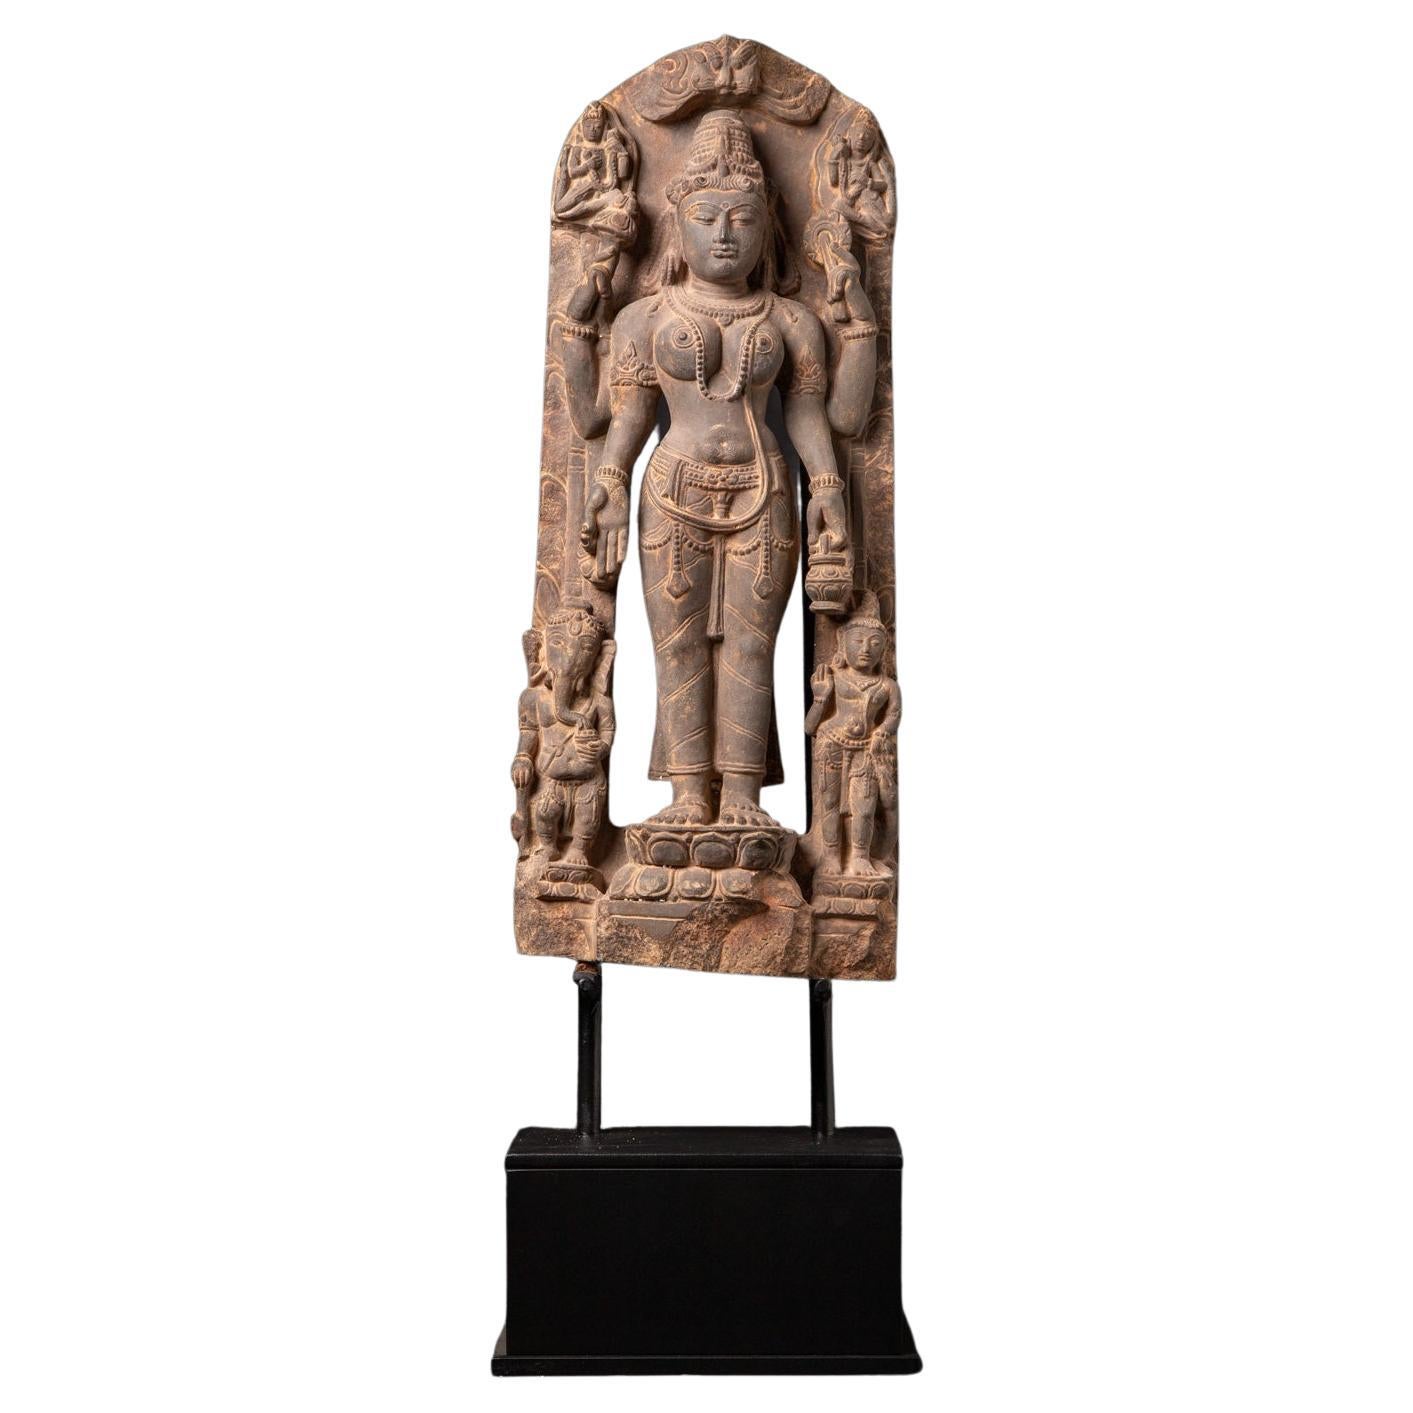 Sandsteinstatue von Saraswati aus dem 19. Jahrhundert mit Ganesha und Kartikeya aus Indien